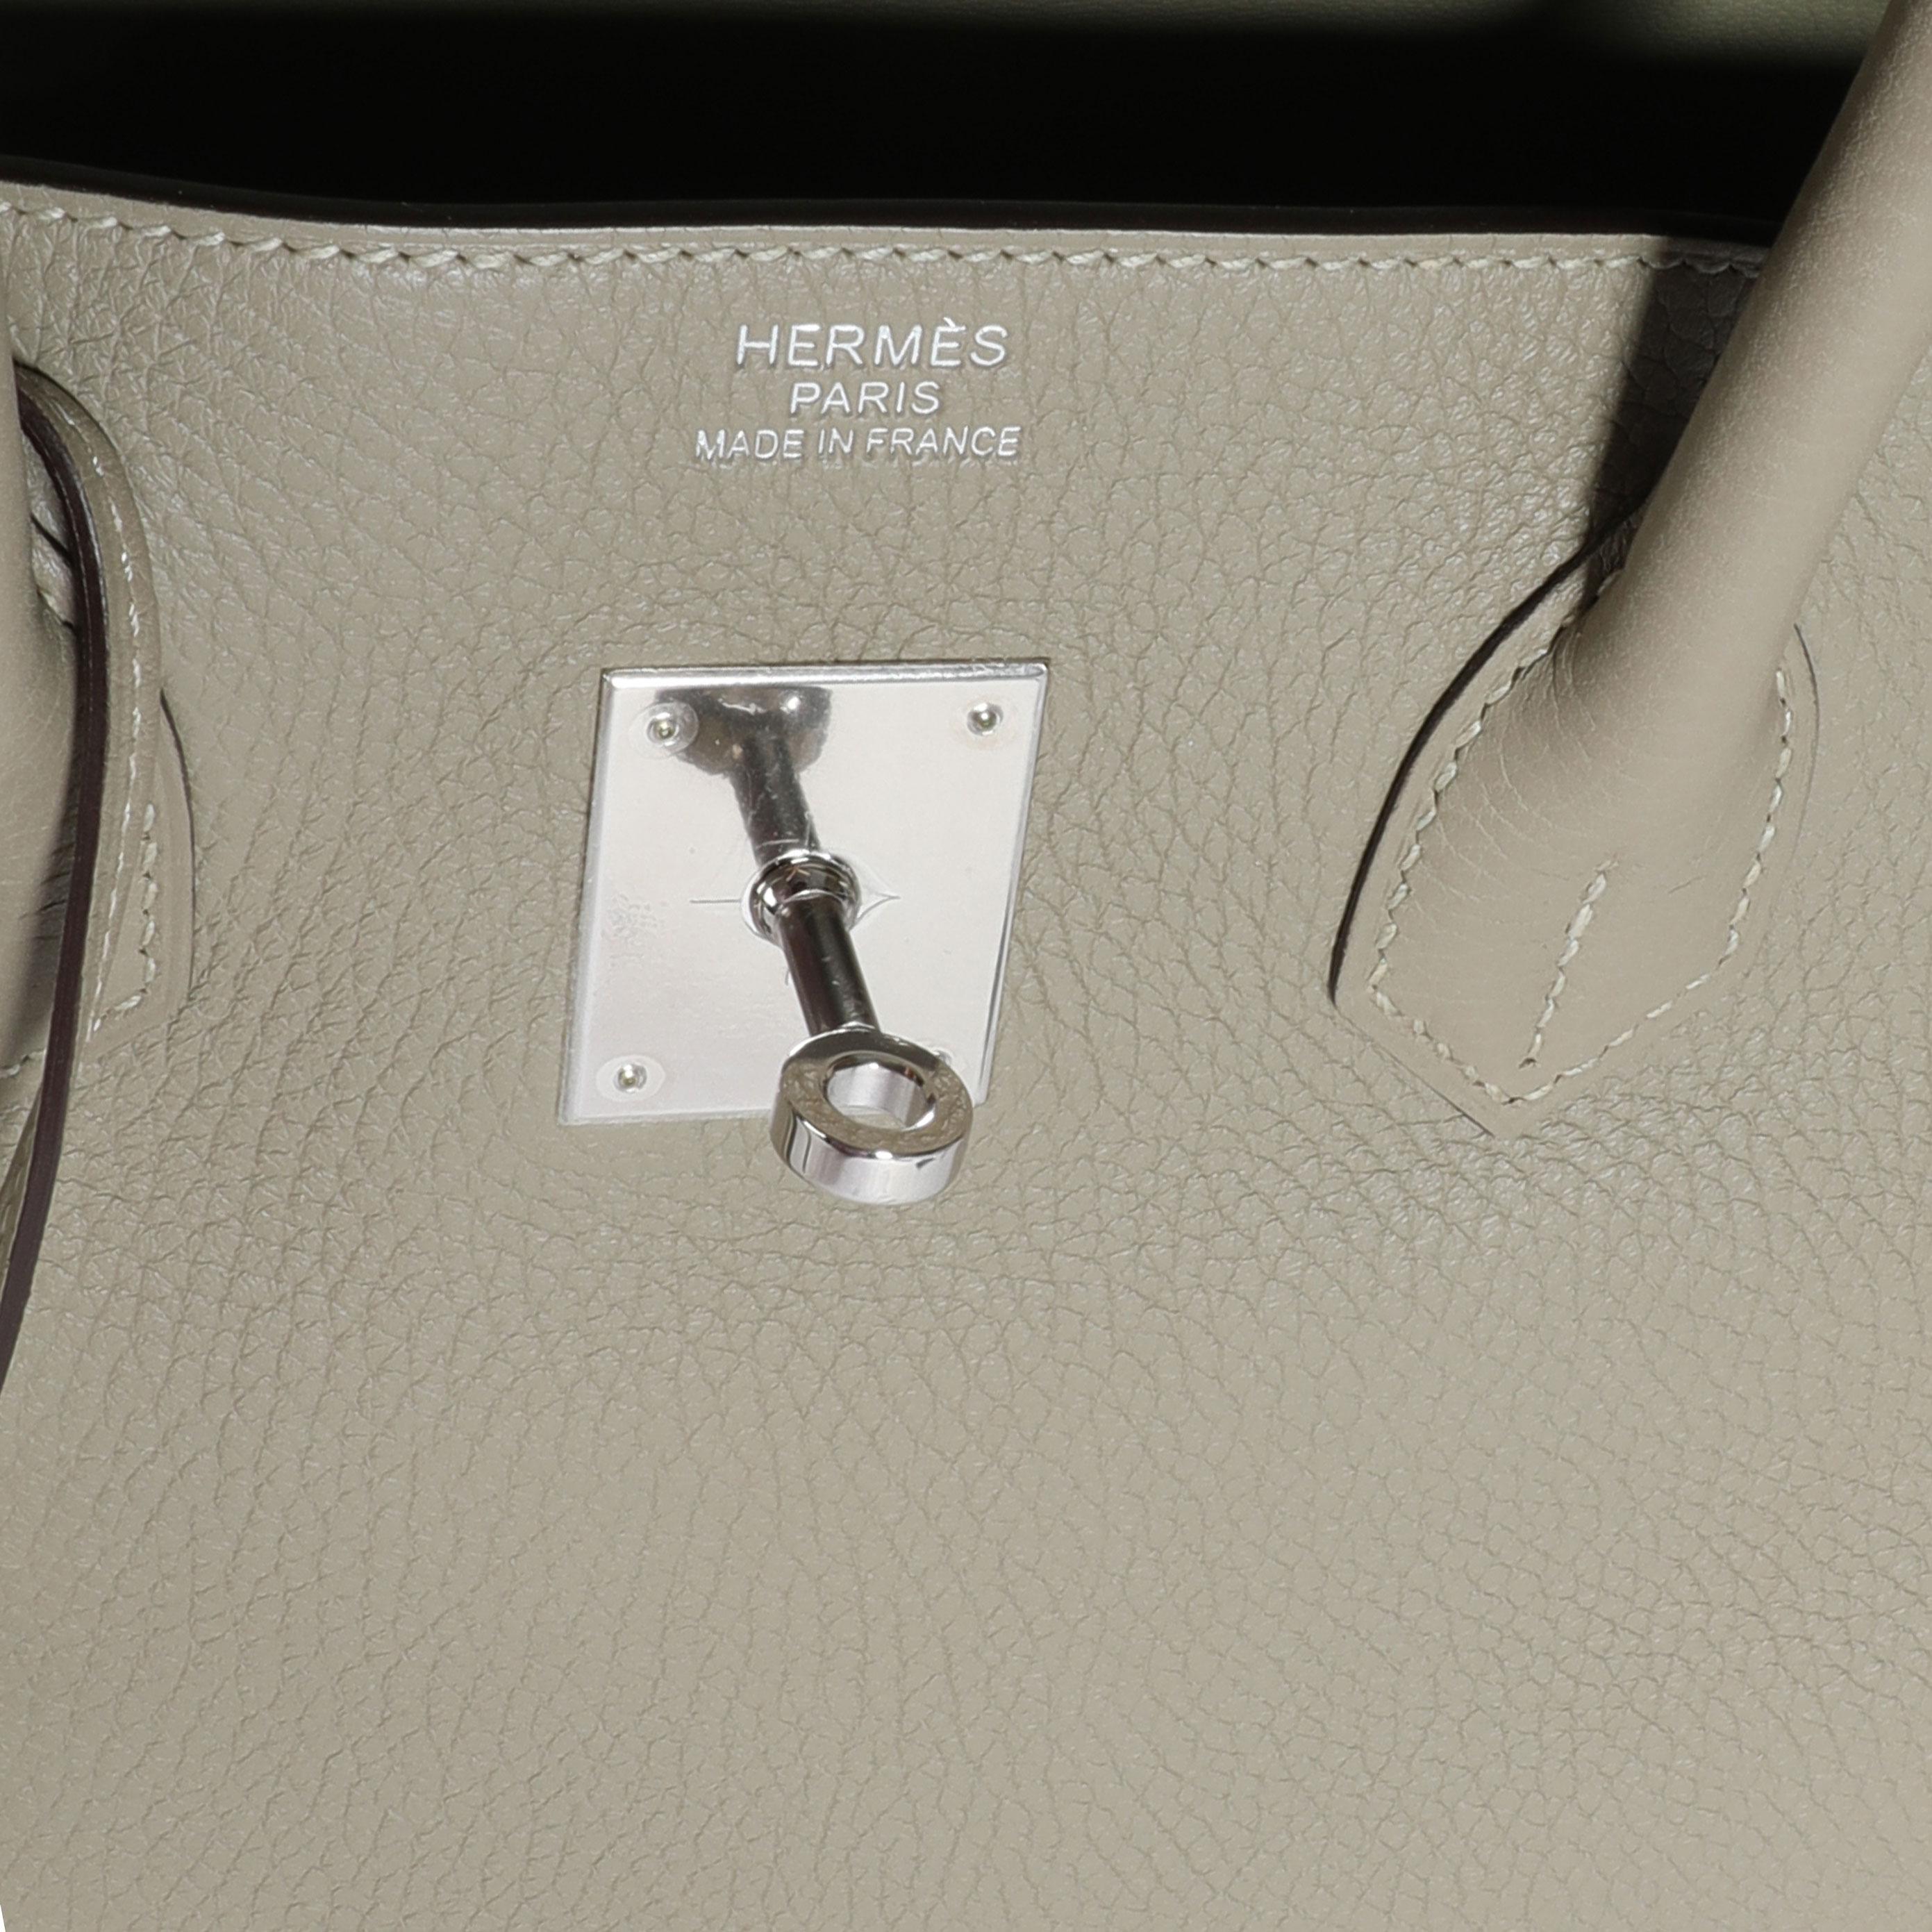 Hermès Sauge Clémence Birkin 35 PHW
SKU: 110983

Zustand der Handtasche: Sehr gut
Bemerkungen zum Zustand: Sehr guter Zustand. Plastik an einigen Geräten. Leichte Abschürfungen an den Ecken.
Marke: Hermès
Modell: Birkin
Herkunftsland: